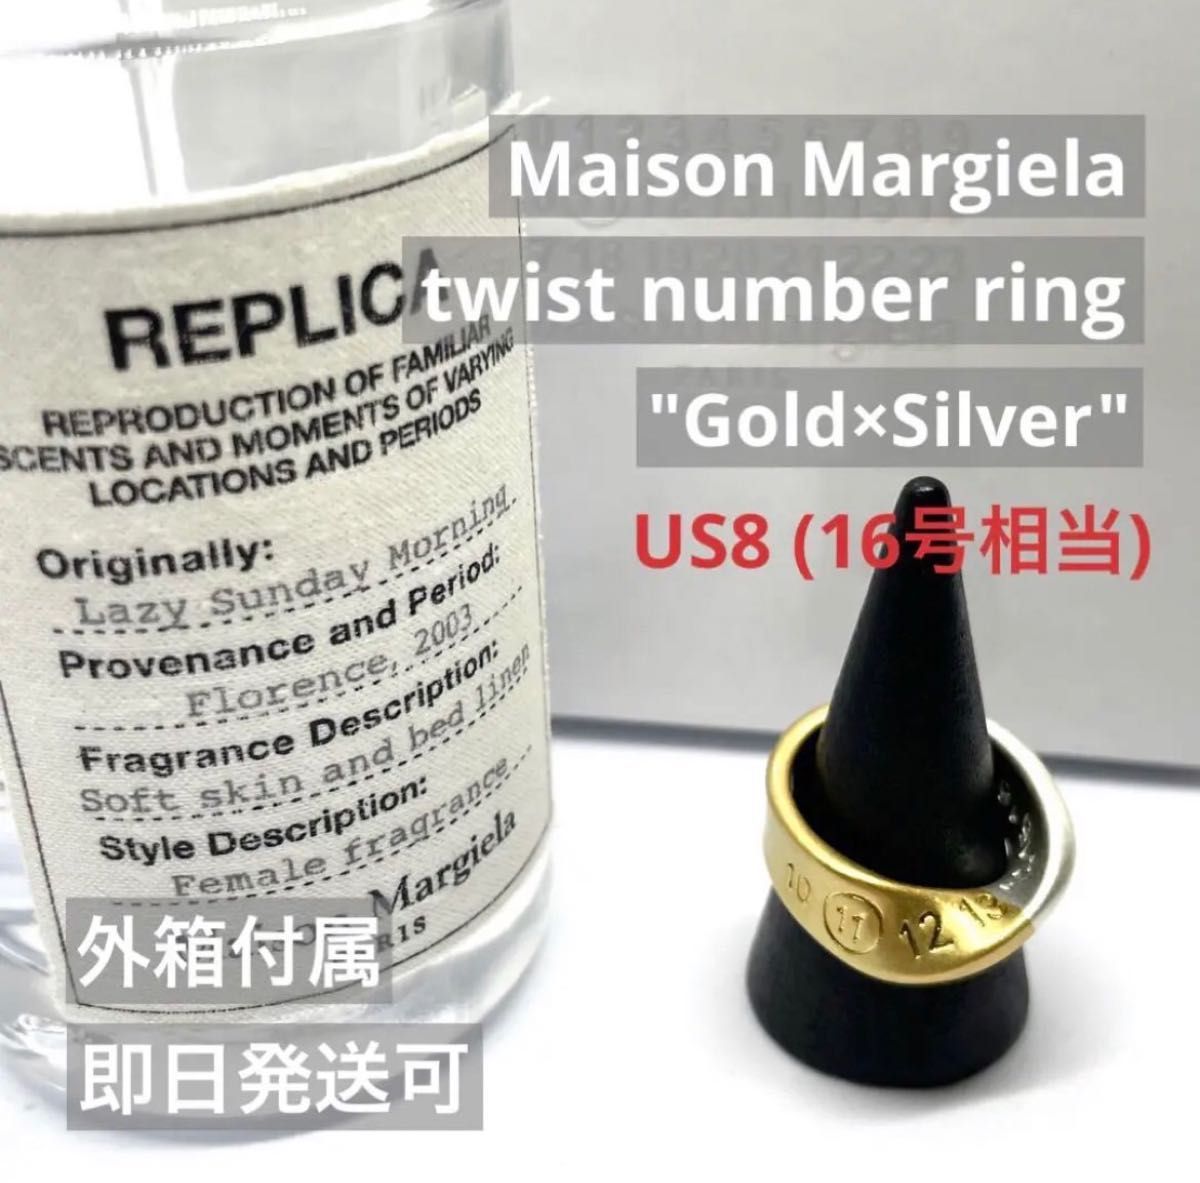 【新品外箱あり】Maison Margiela メゾンマルジェラ ツイスト ナンバーリング ゴールド×シルバー